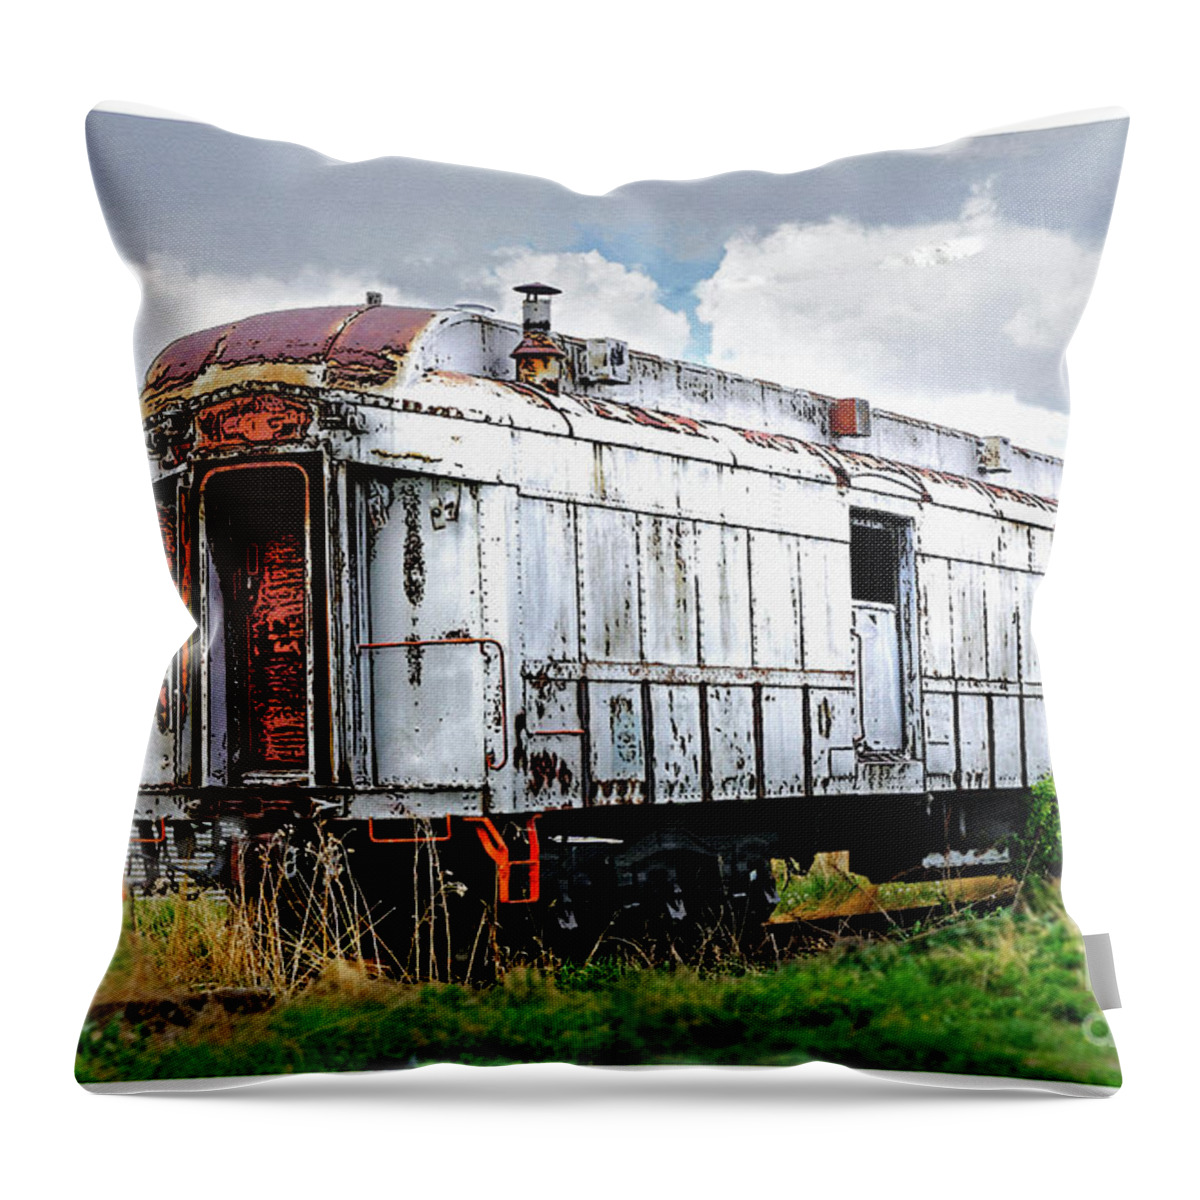 Train Throw Pillow featuring the digital art Rail Car by Deb Nakano